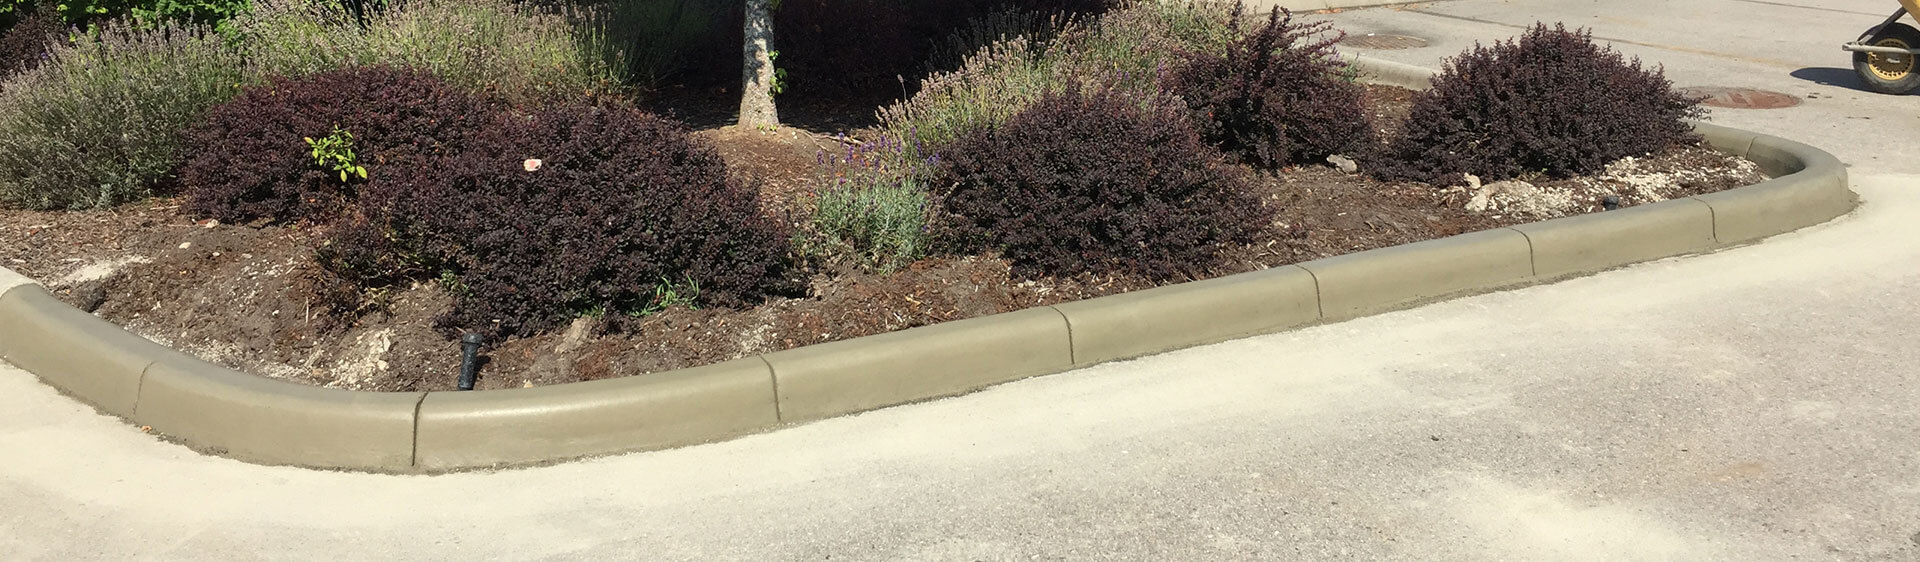 Maple Ridge Concrete Curbing, Garden Edging and Curb Repairs